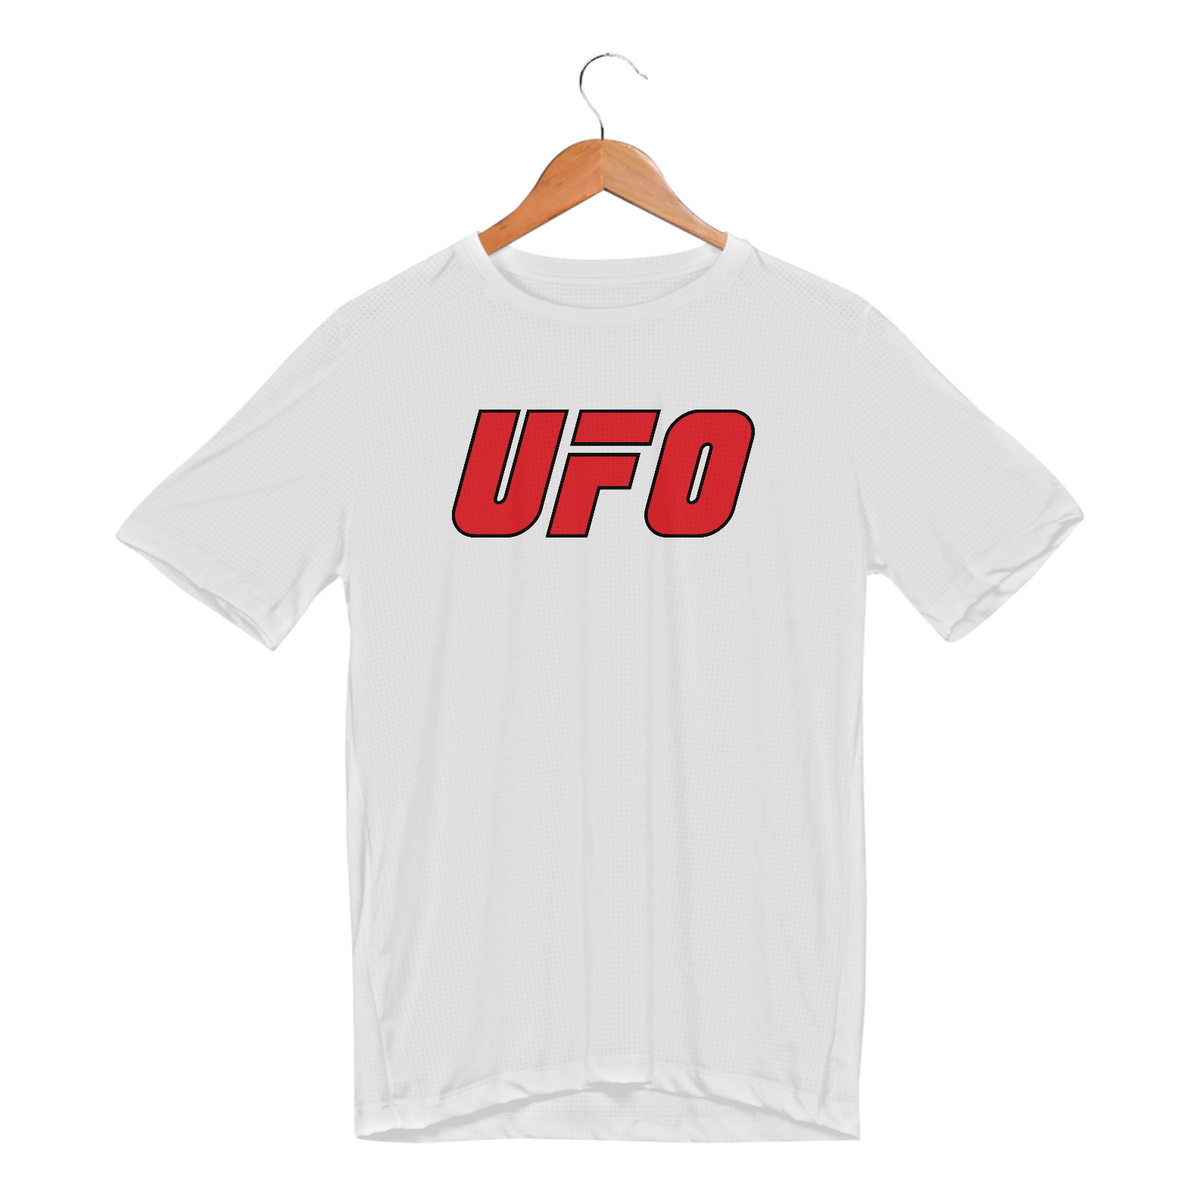 Nome do produto: UFO - T-shirt Dry Fit UV